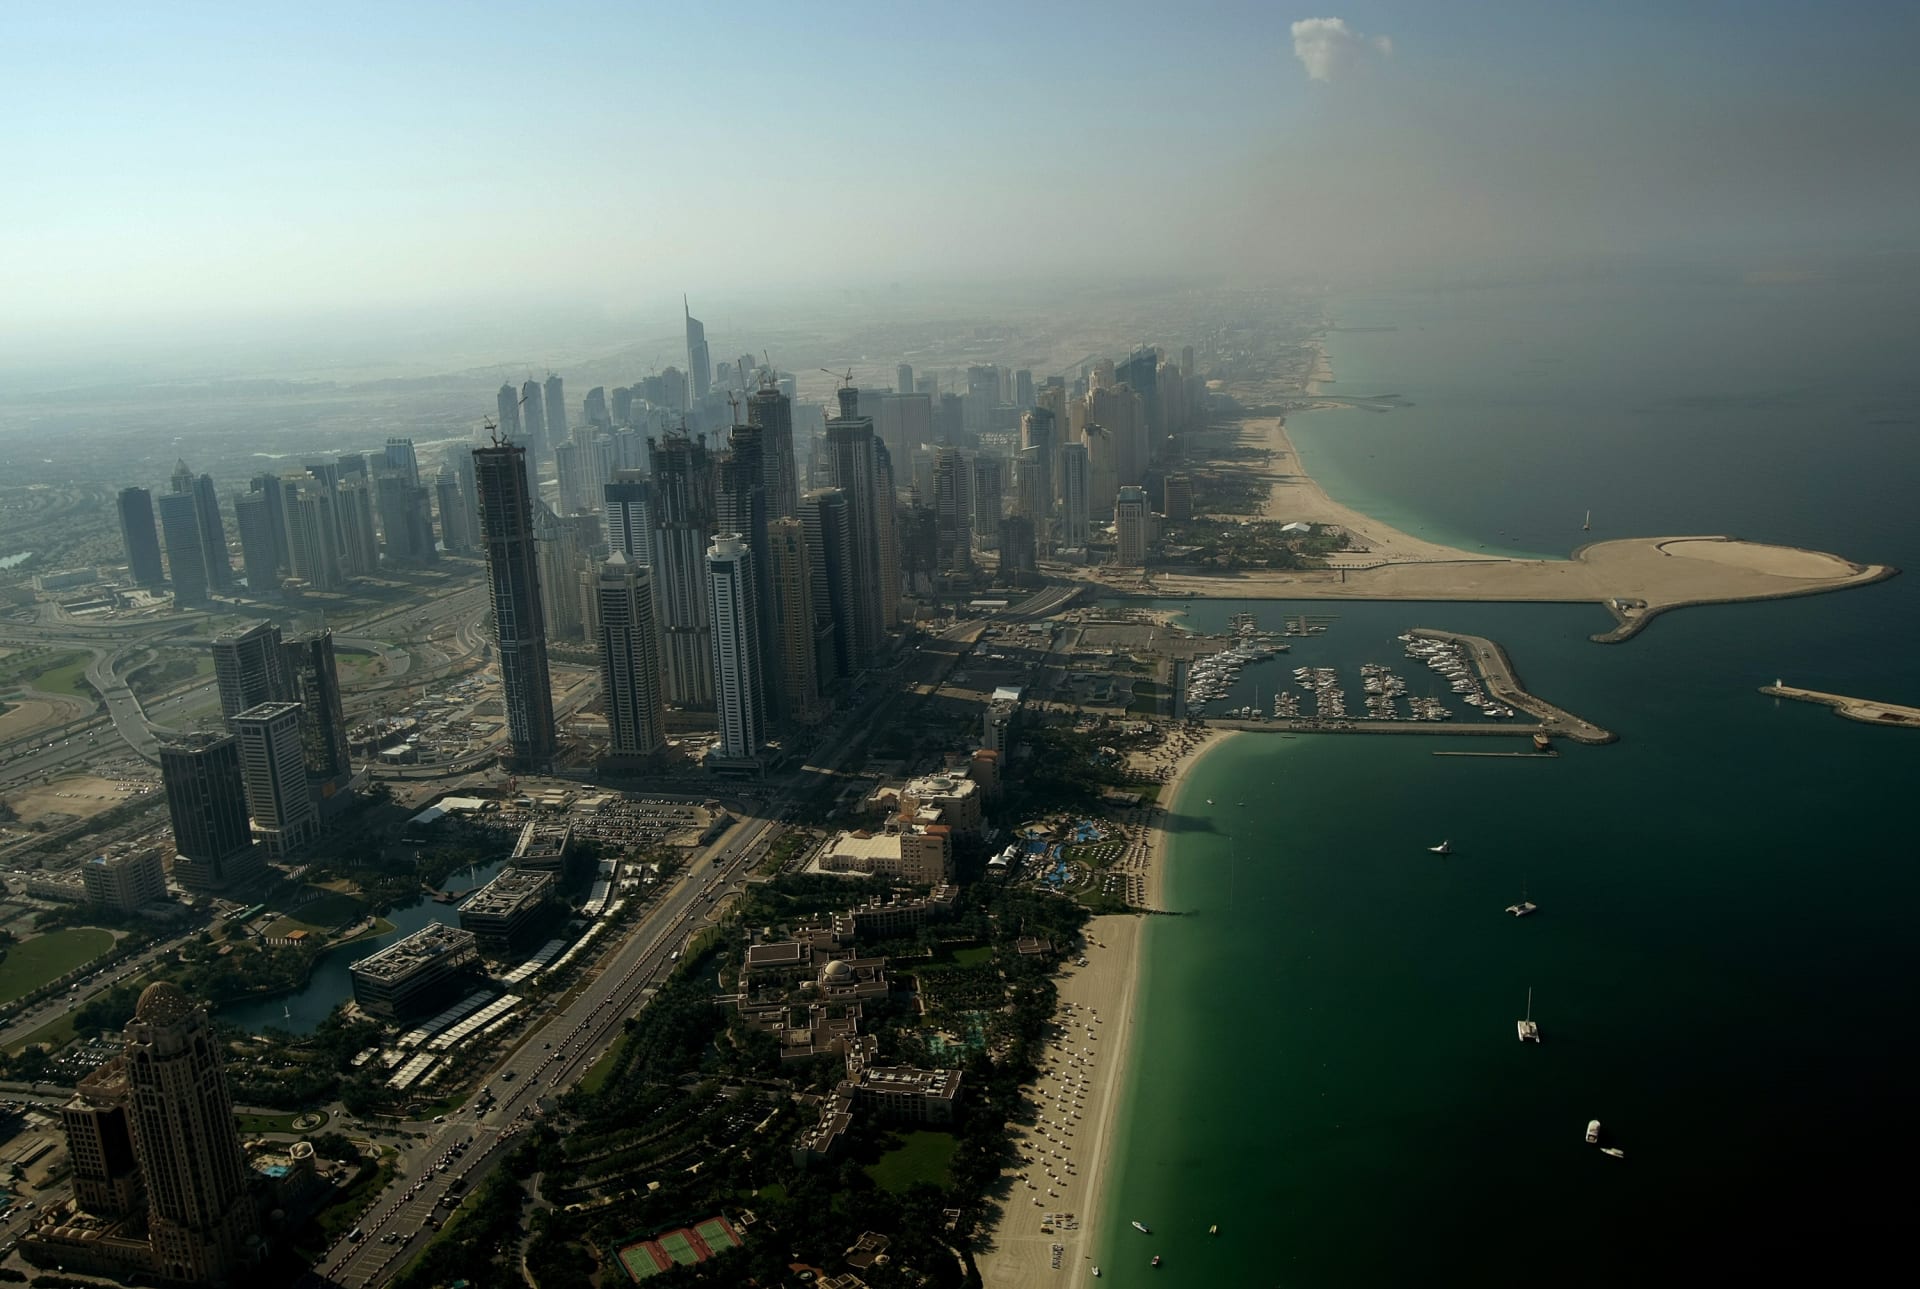 ستاندارد أند بورز: أرقام قياسية بأسعار عقارات دبي وحجم العرض سيحدد استمرار الصعود